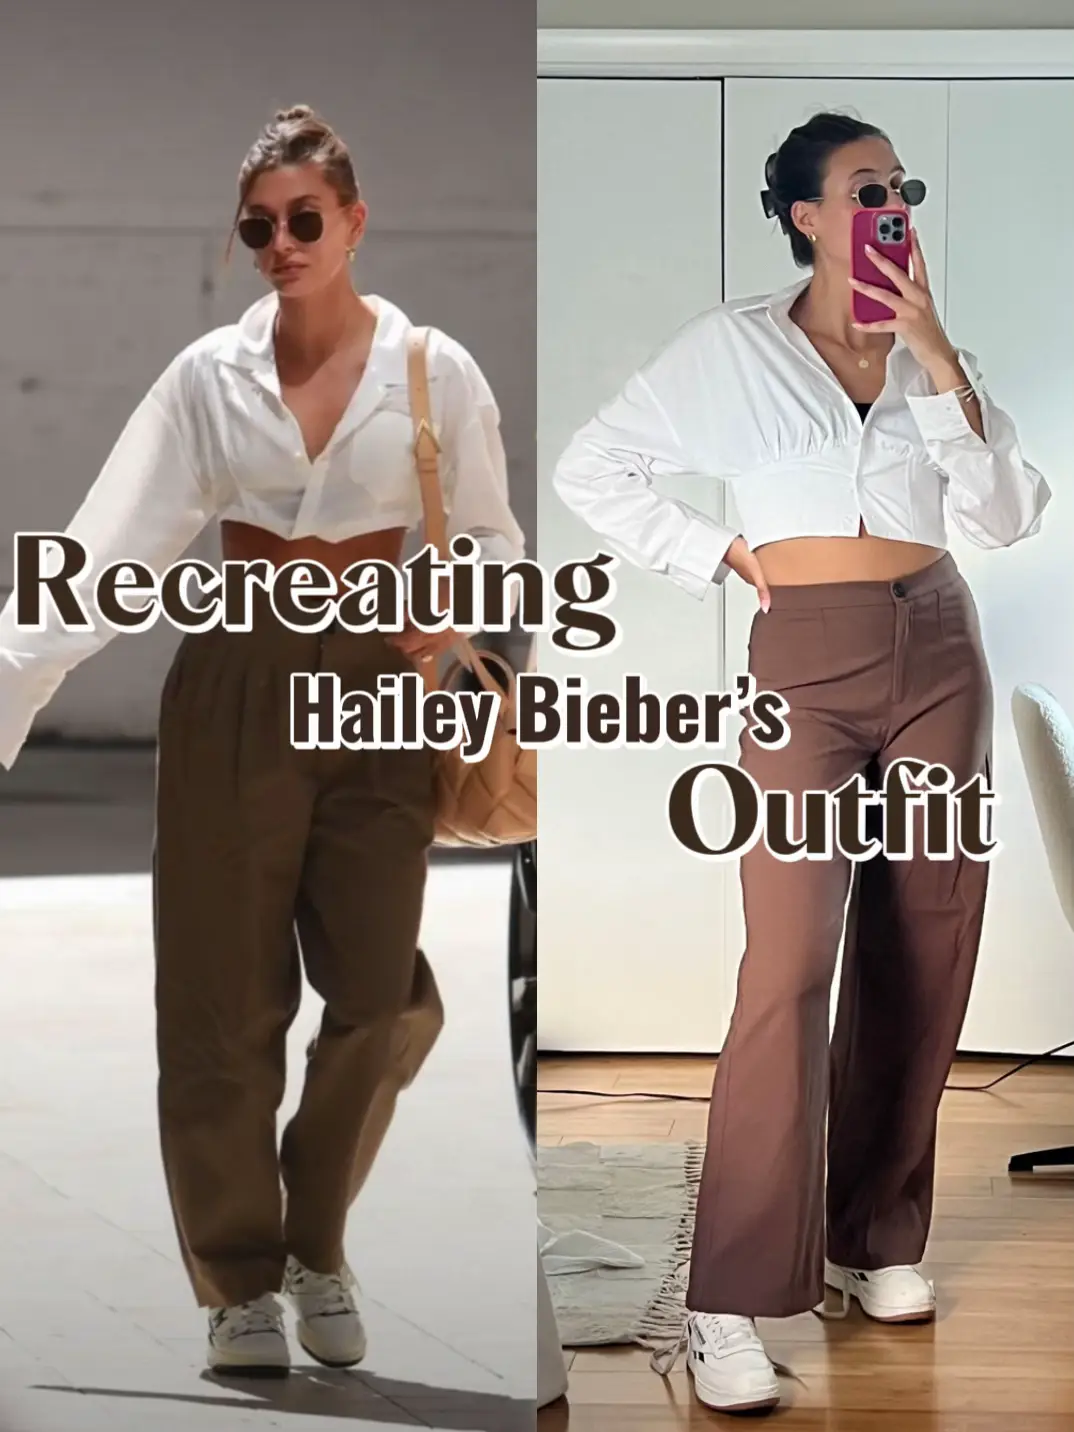 Hailey Bieber wows in silver bikini bottoms & skin-tight top for